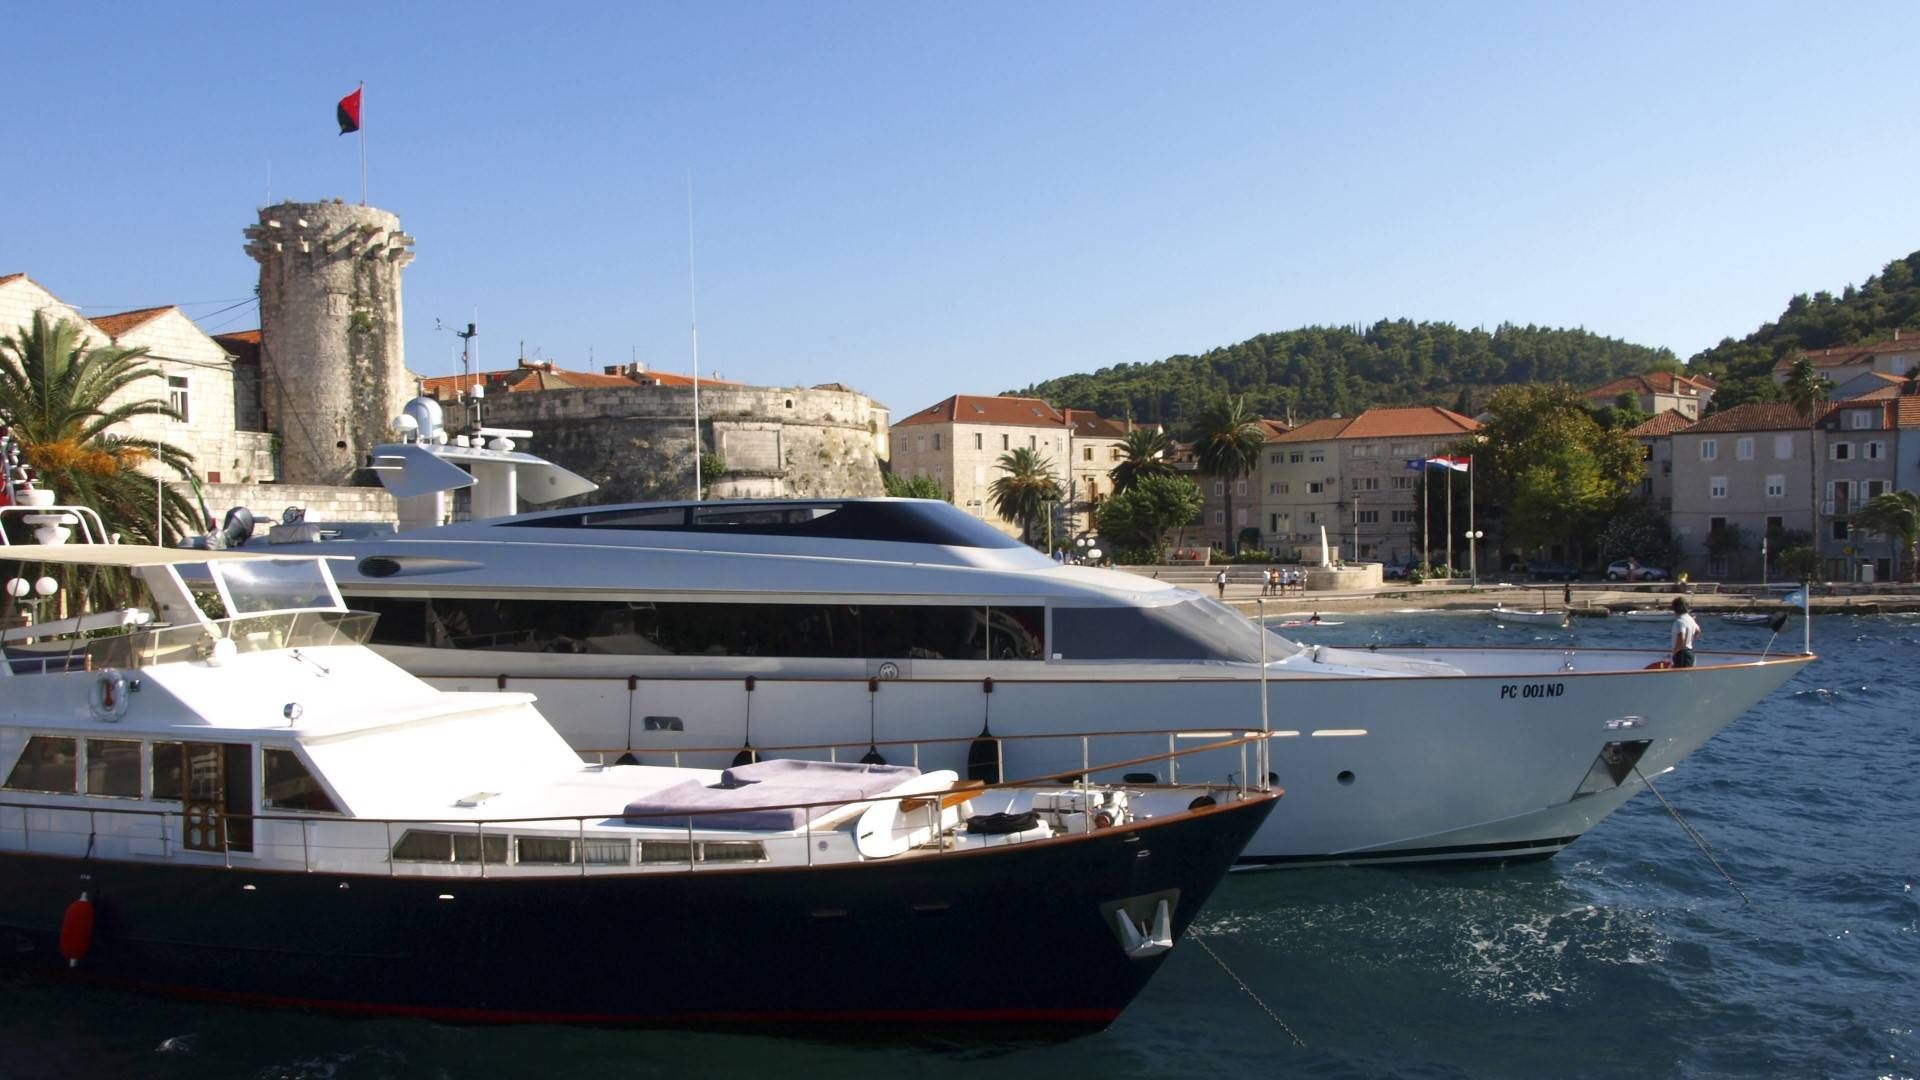 Luxusyachten vor der historischen Festung im Hafen von Korcula, Kroatien | Foto: picture alliance / blickwinkel